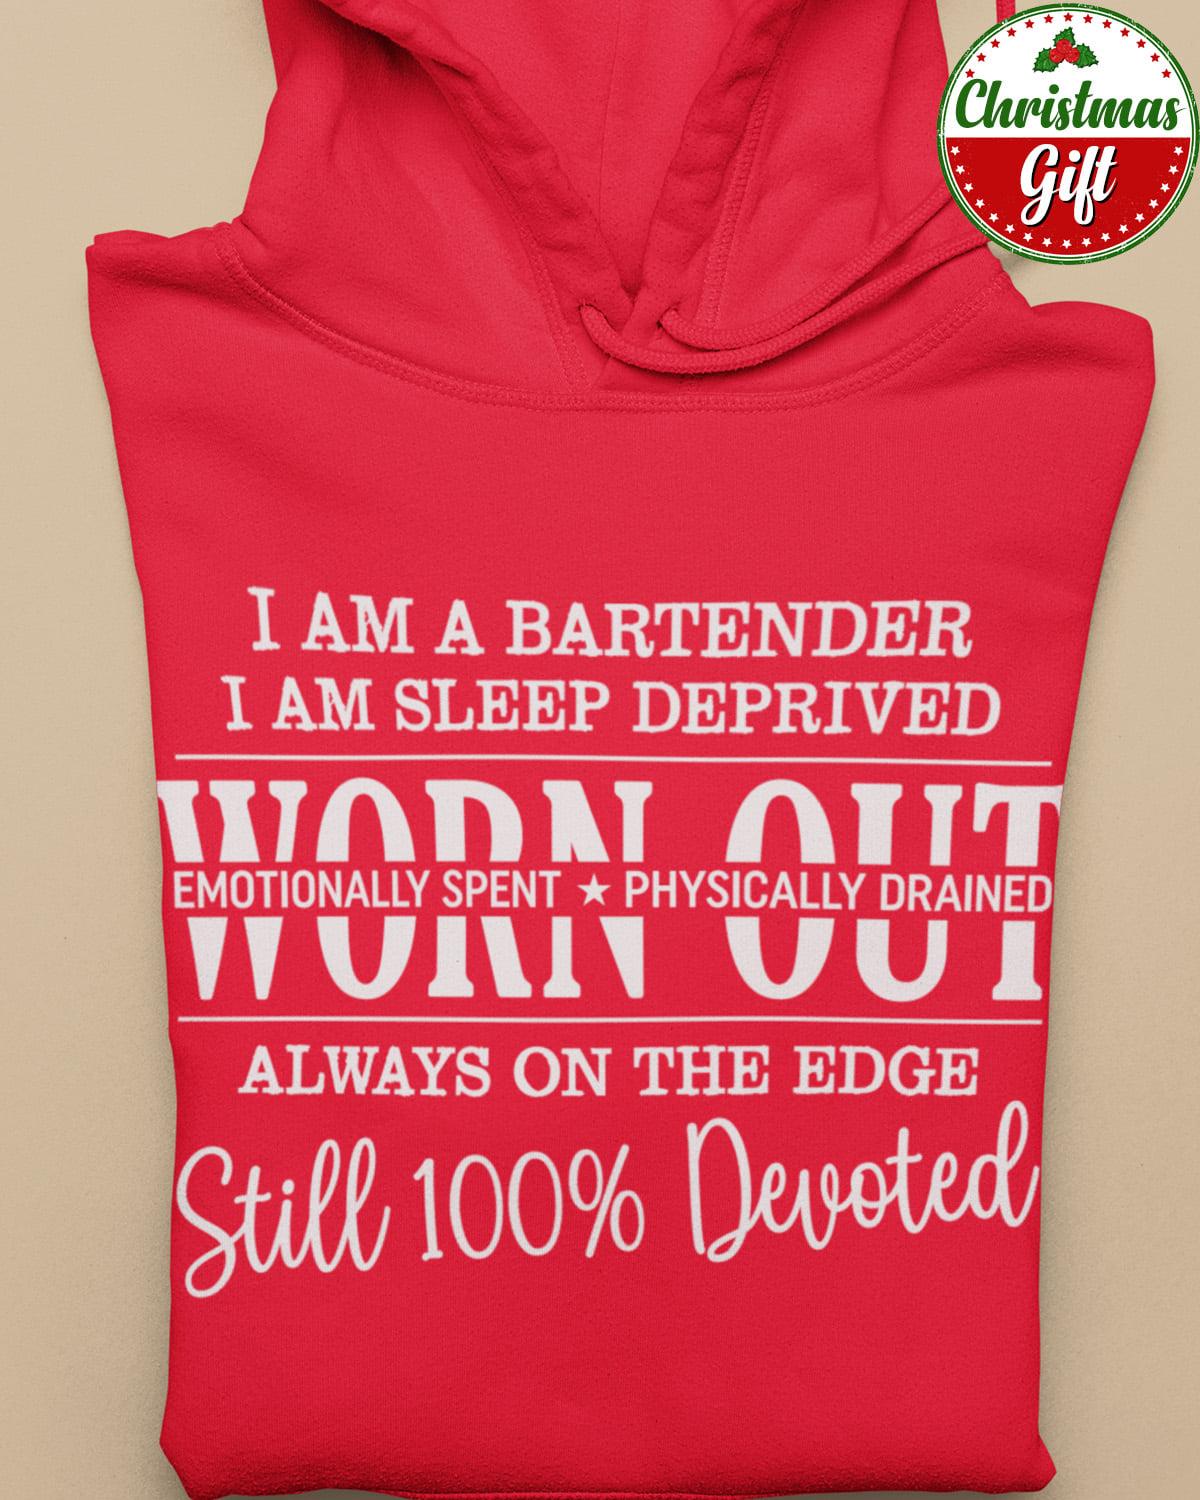 I am a bartender I am sleep deprived worn out - Bartender the job, T-shirt for bartender